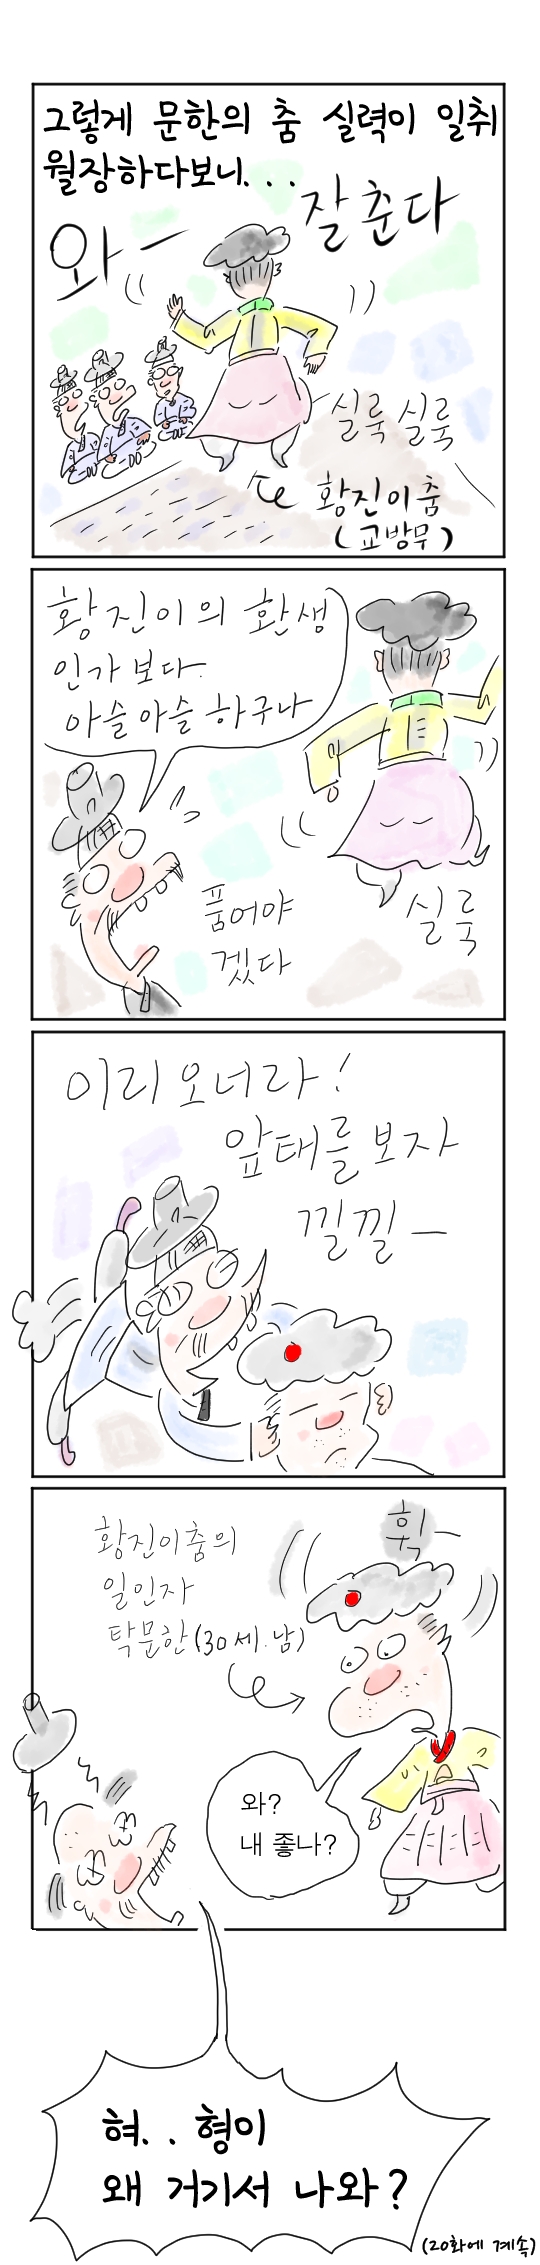 [역사툰] 史(사)람 이야기 19화: 조선 제일 춤꾼, 탁문한

